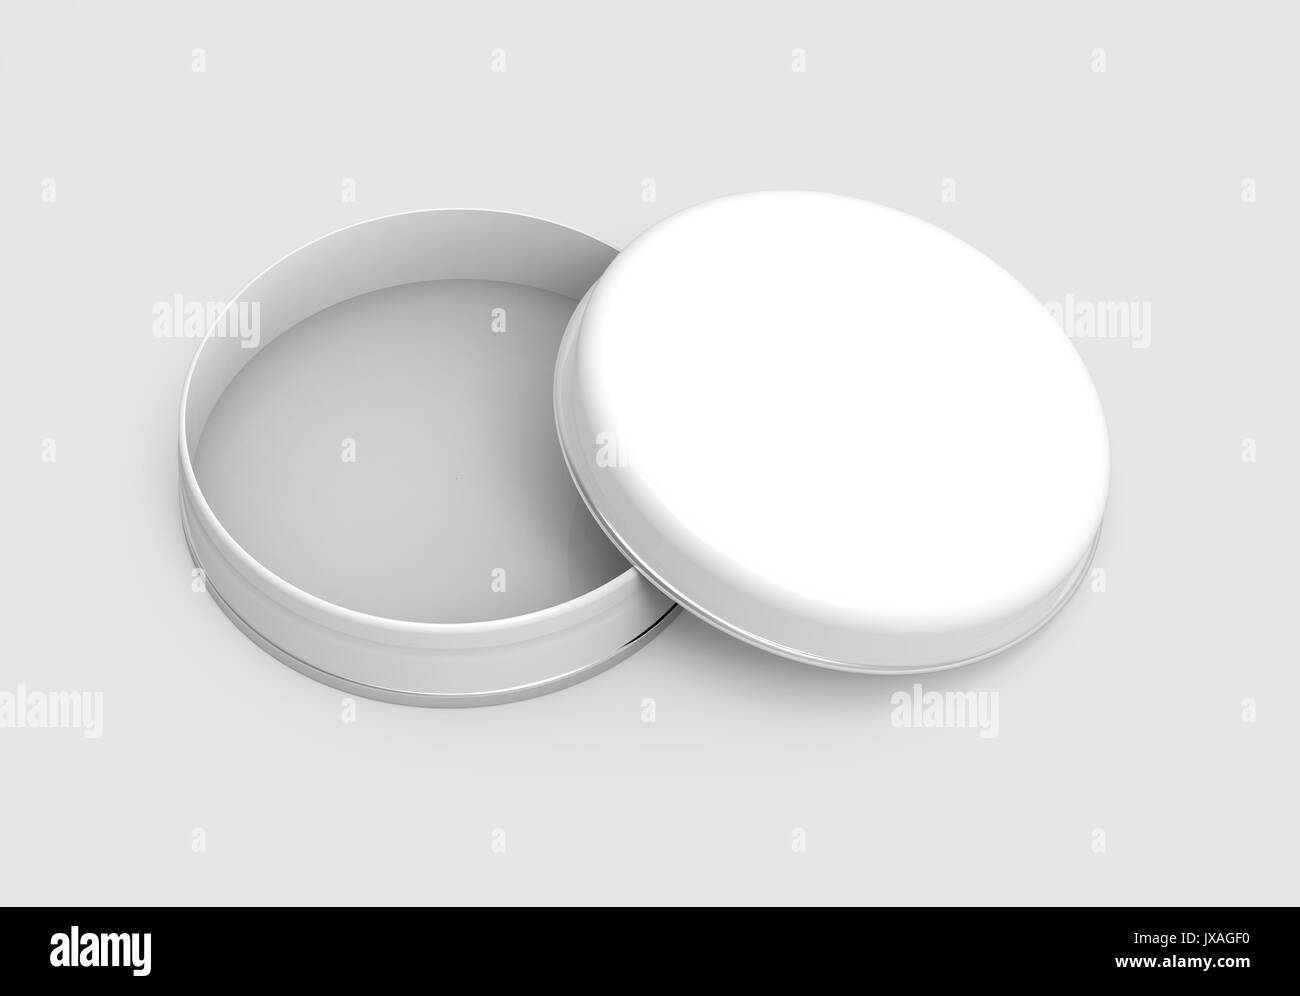 Kurze Metalldose Mockup, leere runde Blechdose mit glänzenden Oberfläche Vorlage in 3D Rendering für Design verwendet, offene Kappe Stockfoto